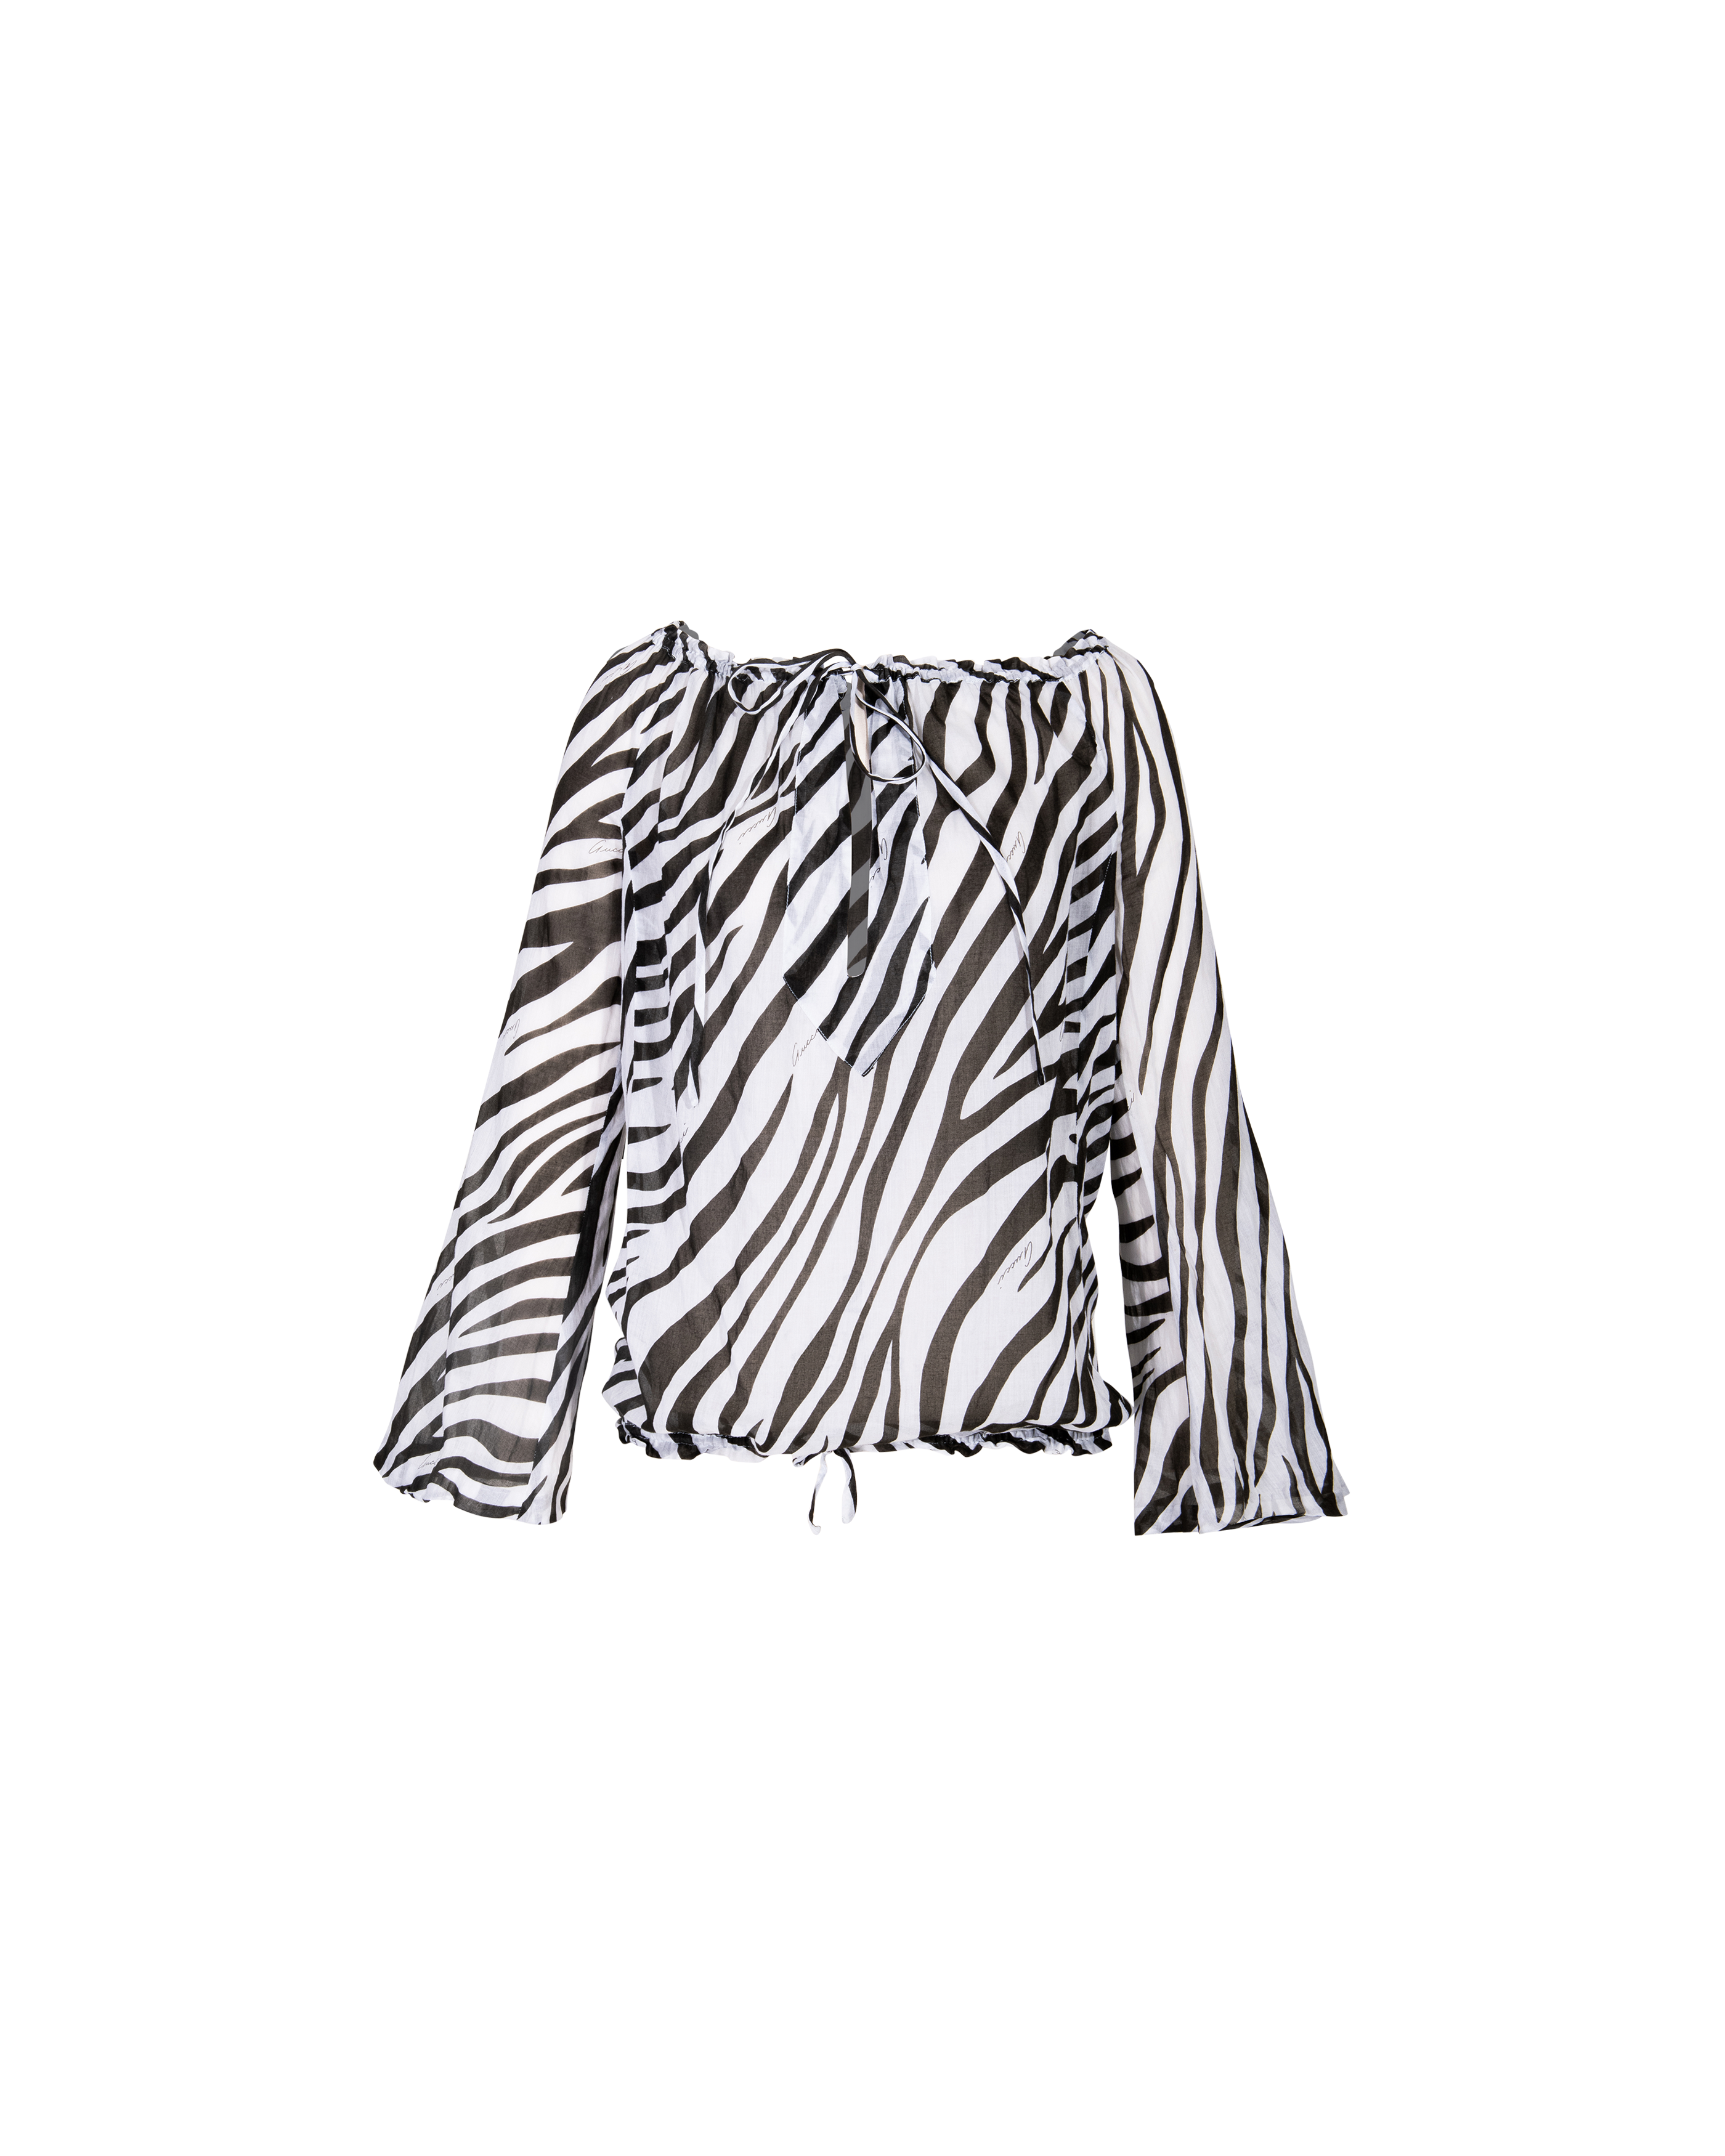 S/S 1996 Black and White Zebra Print Cotton Blouse